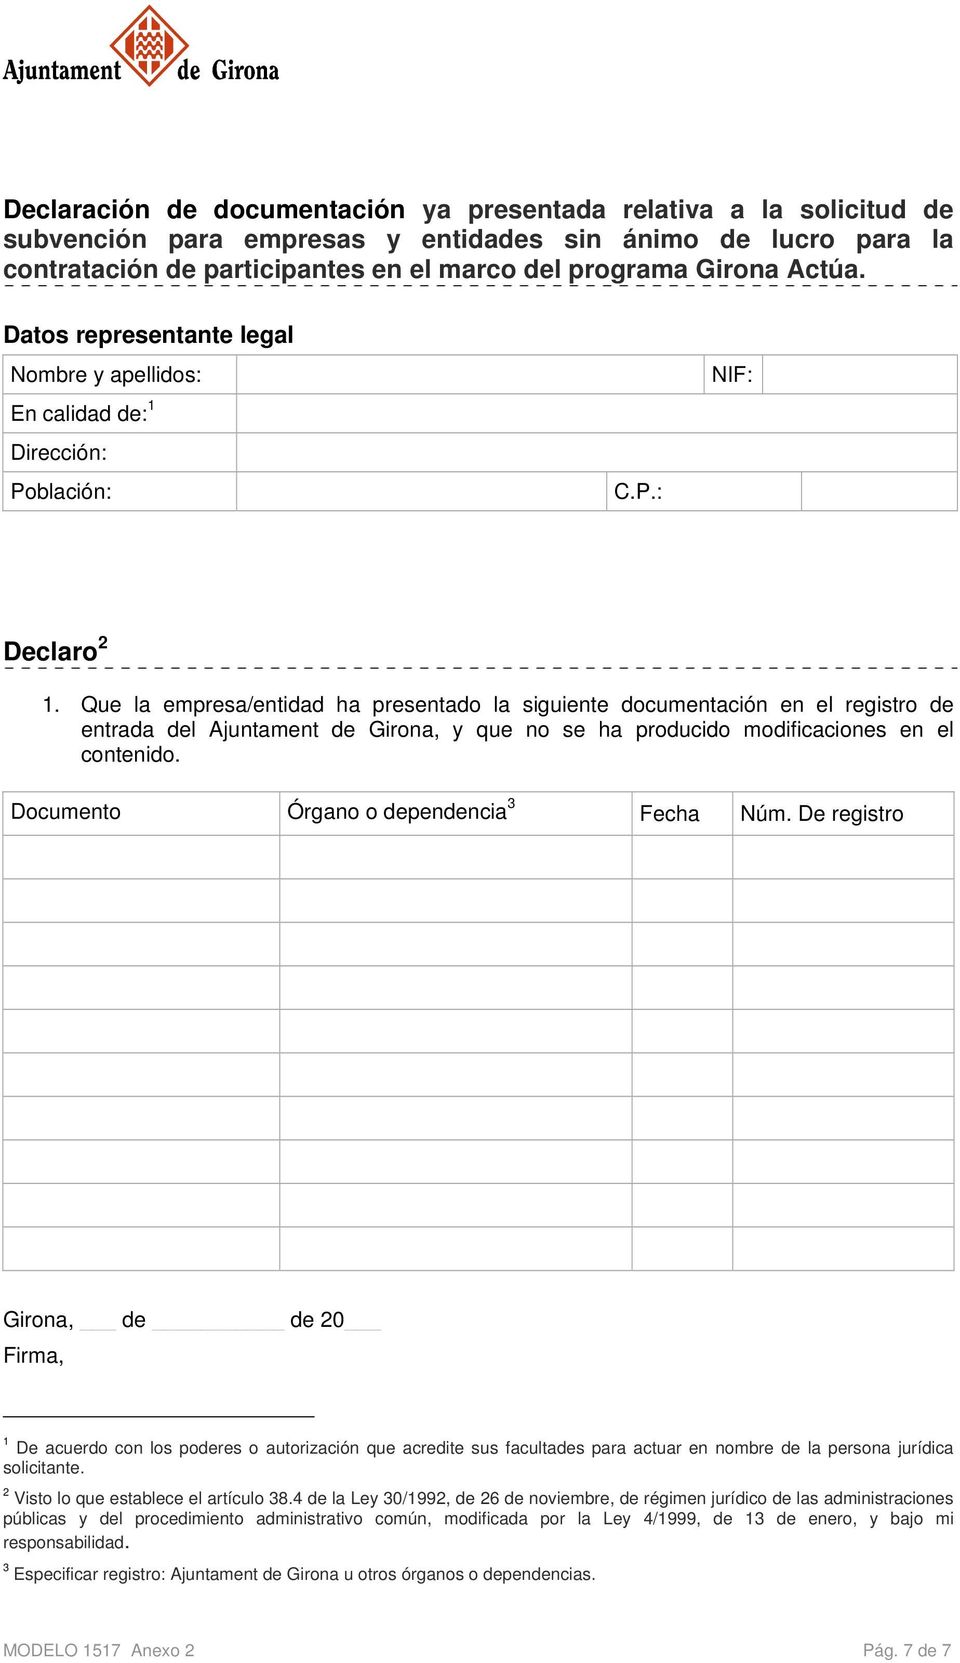 Que la empresa/entidad ha presentado la siguiente documentación en el registro de entrada del Ajuntament de Girona, y que no se ha producido modificaciones en el contenido.